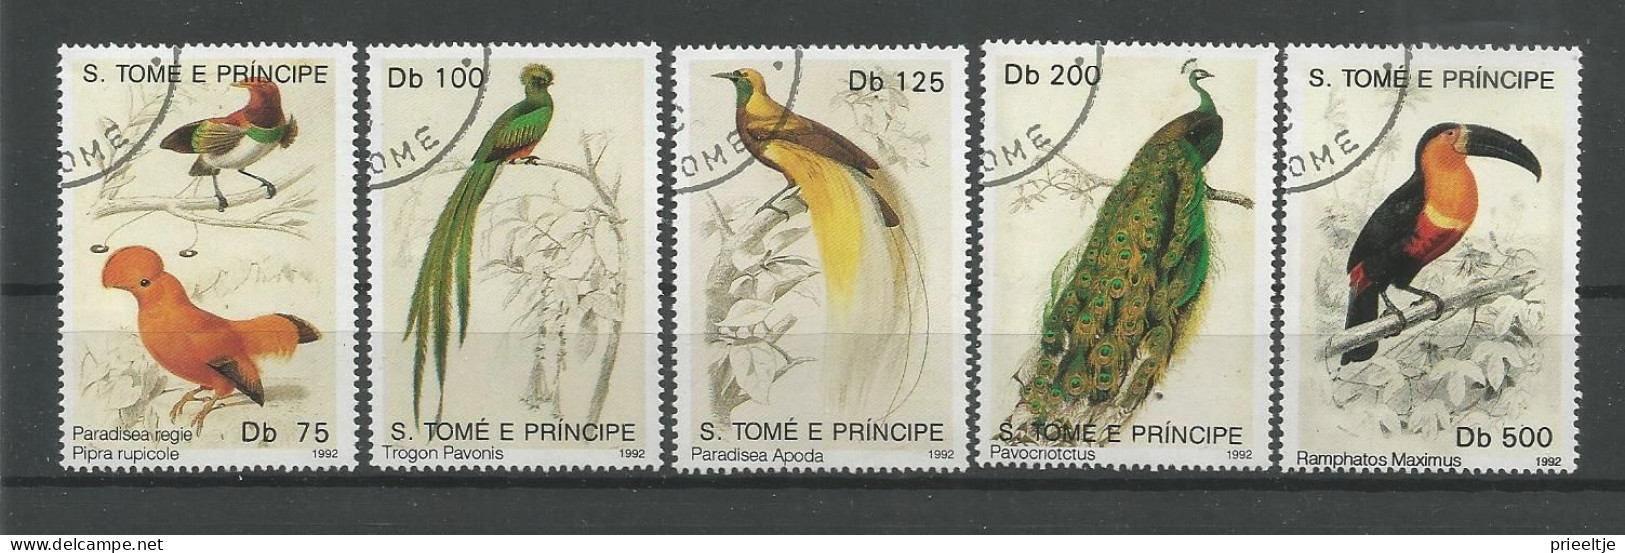 St Tome E Principe 1992 Birds  Y.T. 1099/1103 (0) - Sao Tomé E Principe